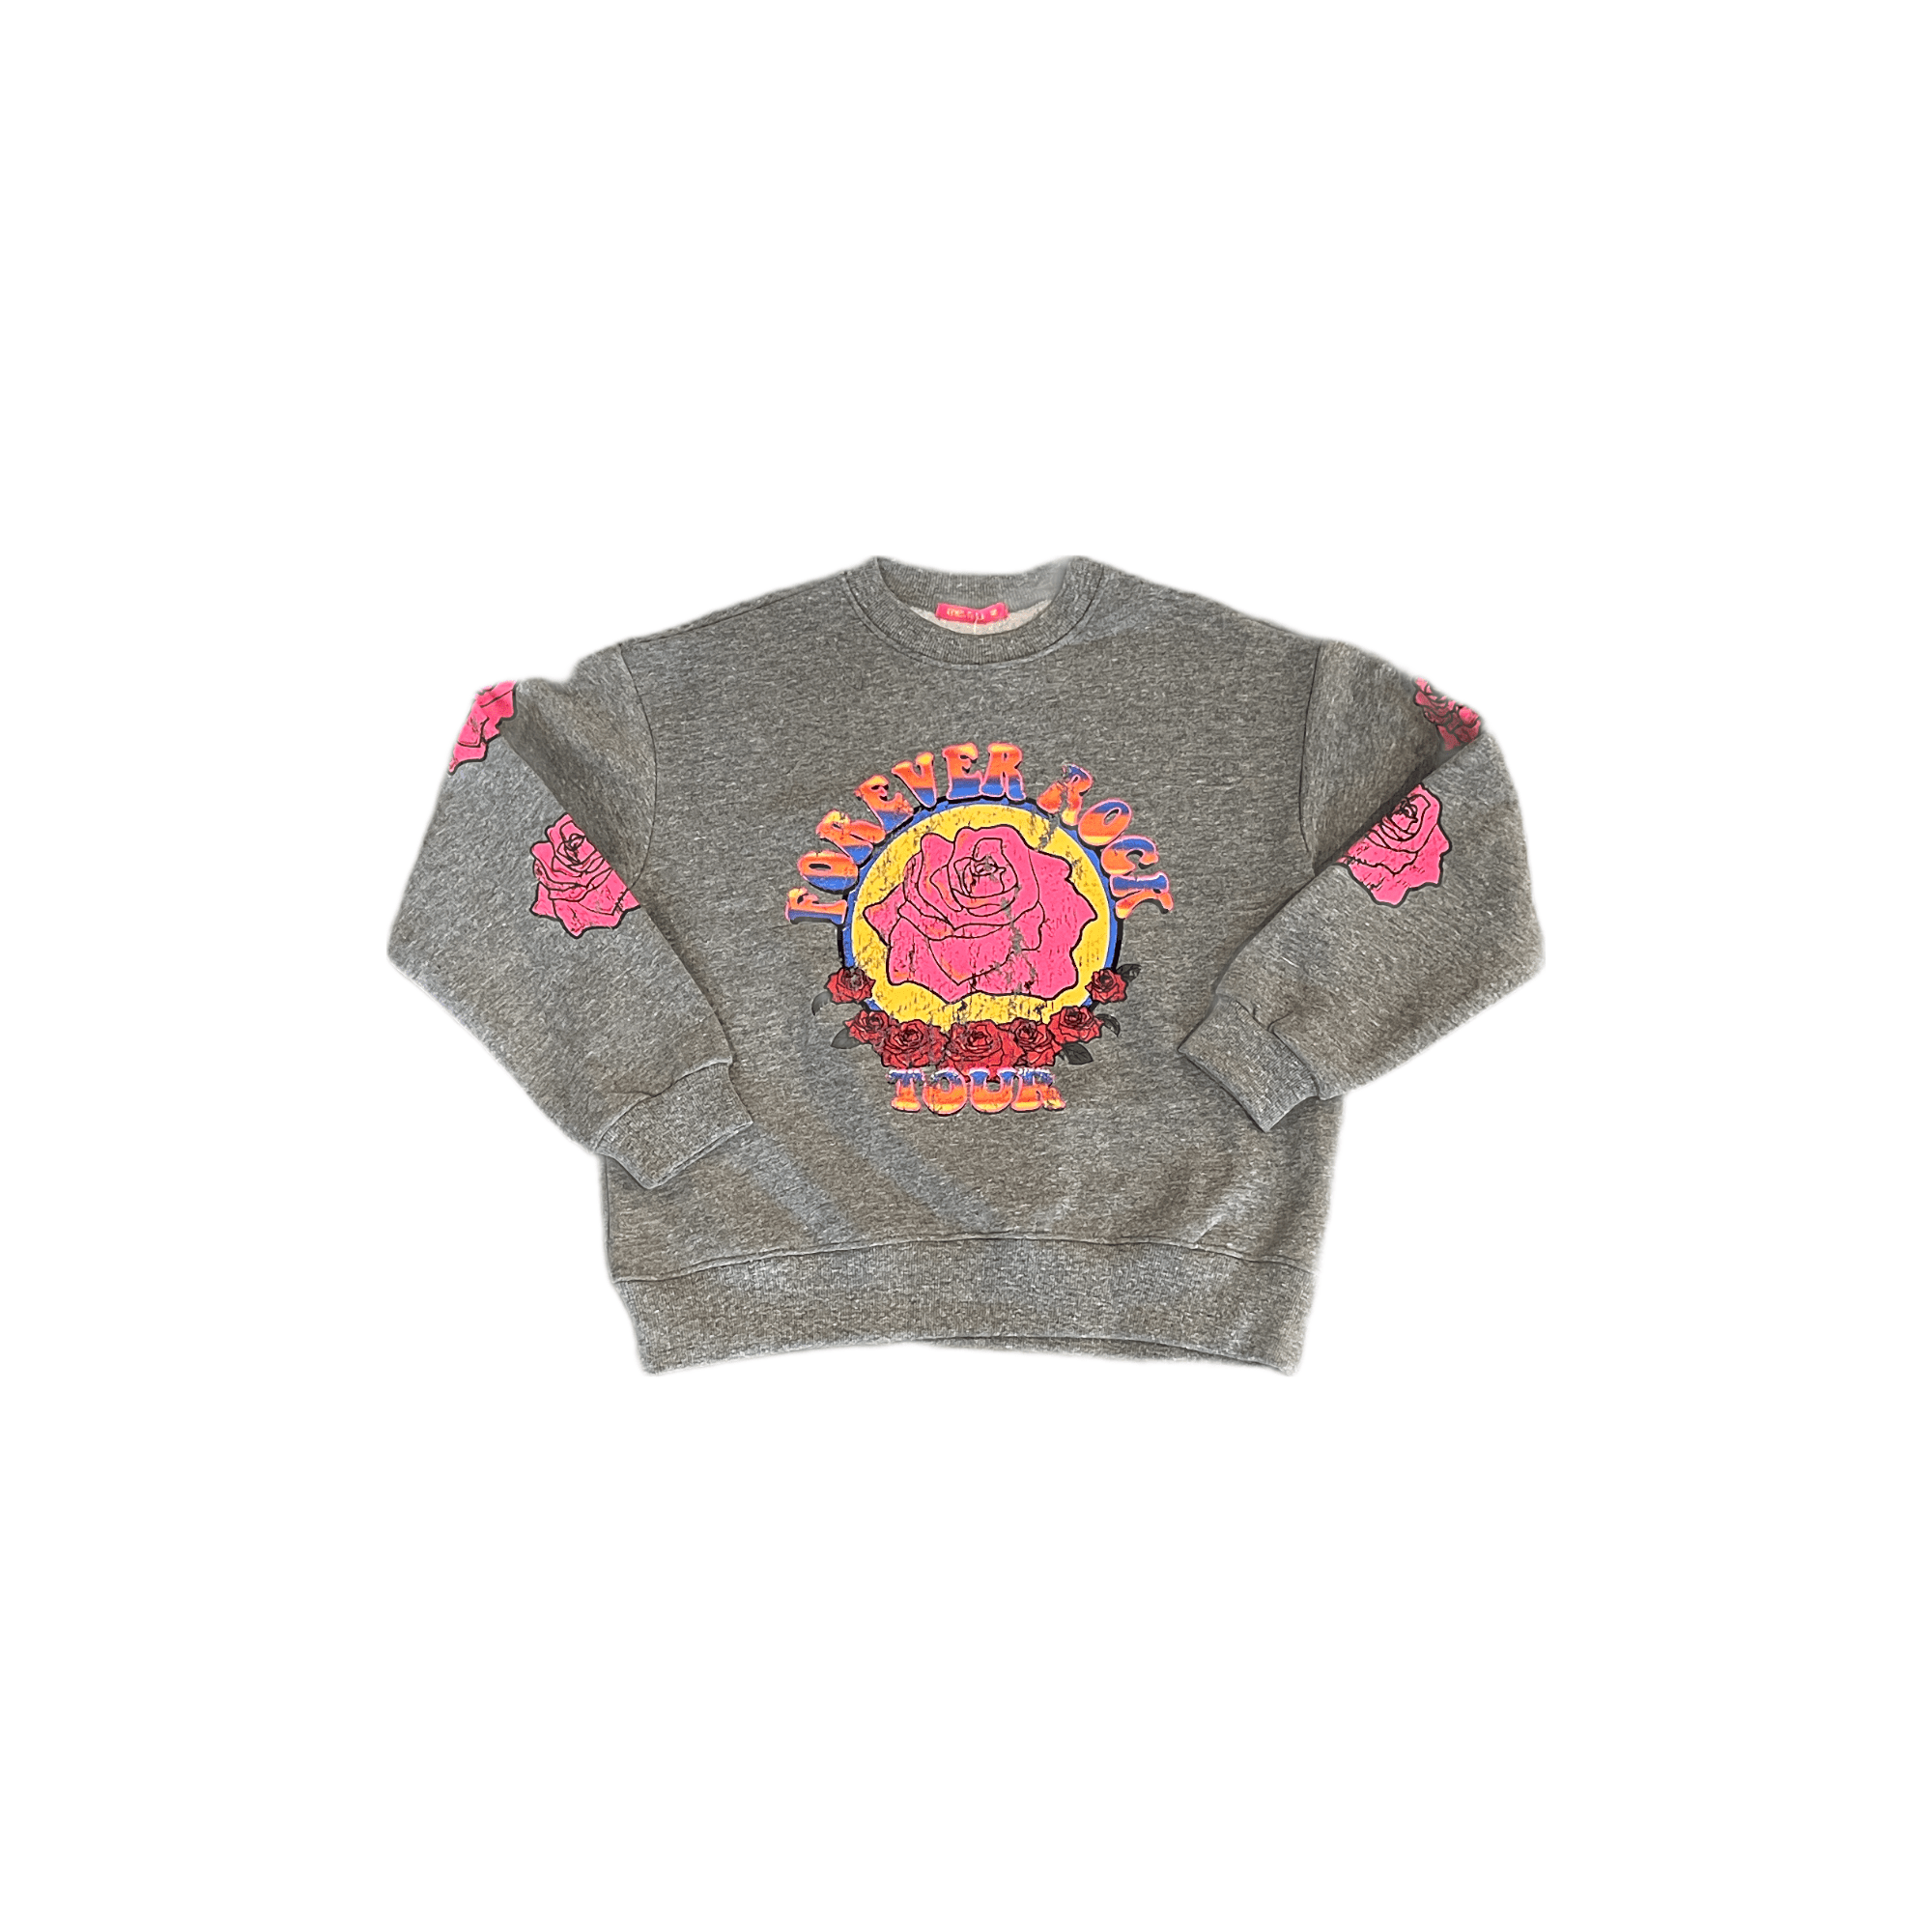 Grateful Dead Sweatshirt - Twinkle Twinkle Little One